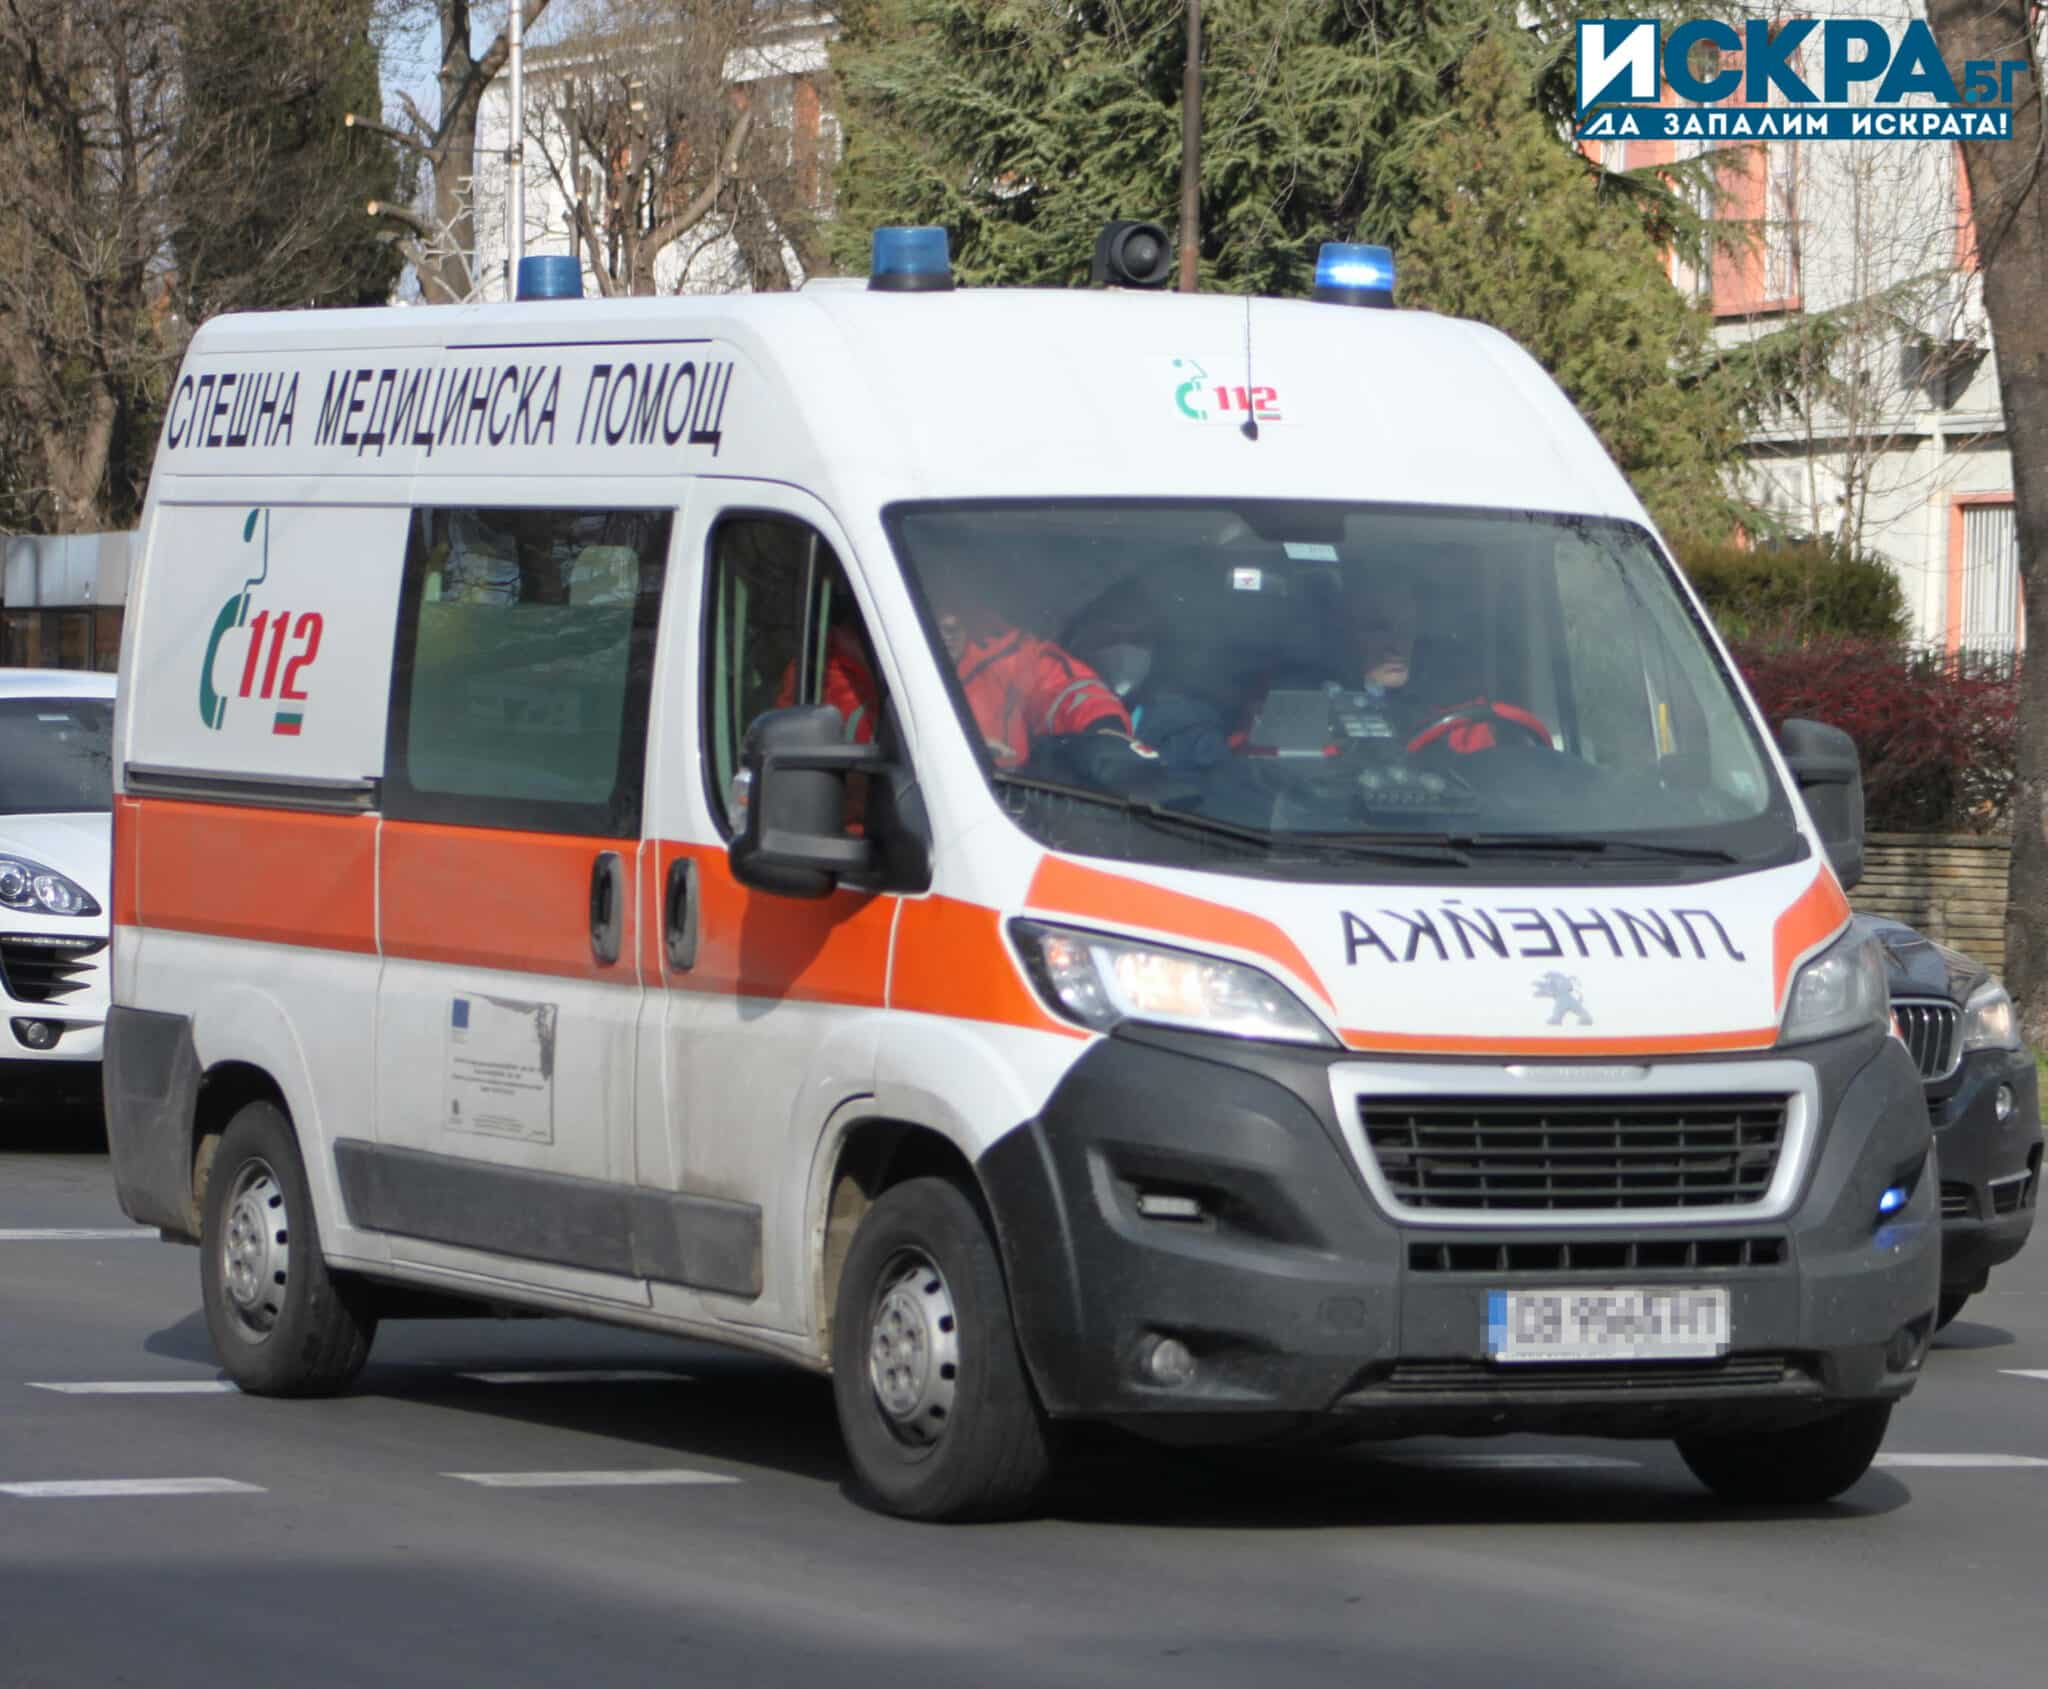 Мотоциклетист е пострадал при катастрофа в Стара Загора, съобщиха от